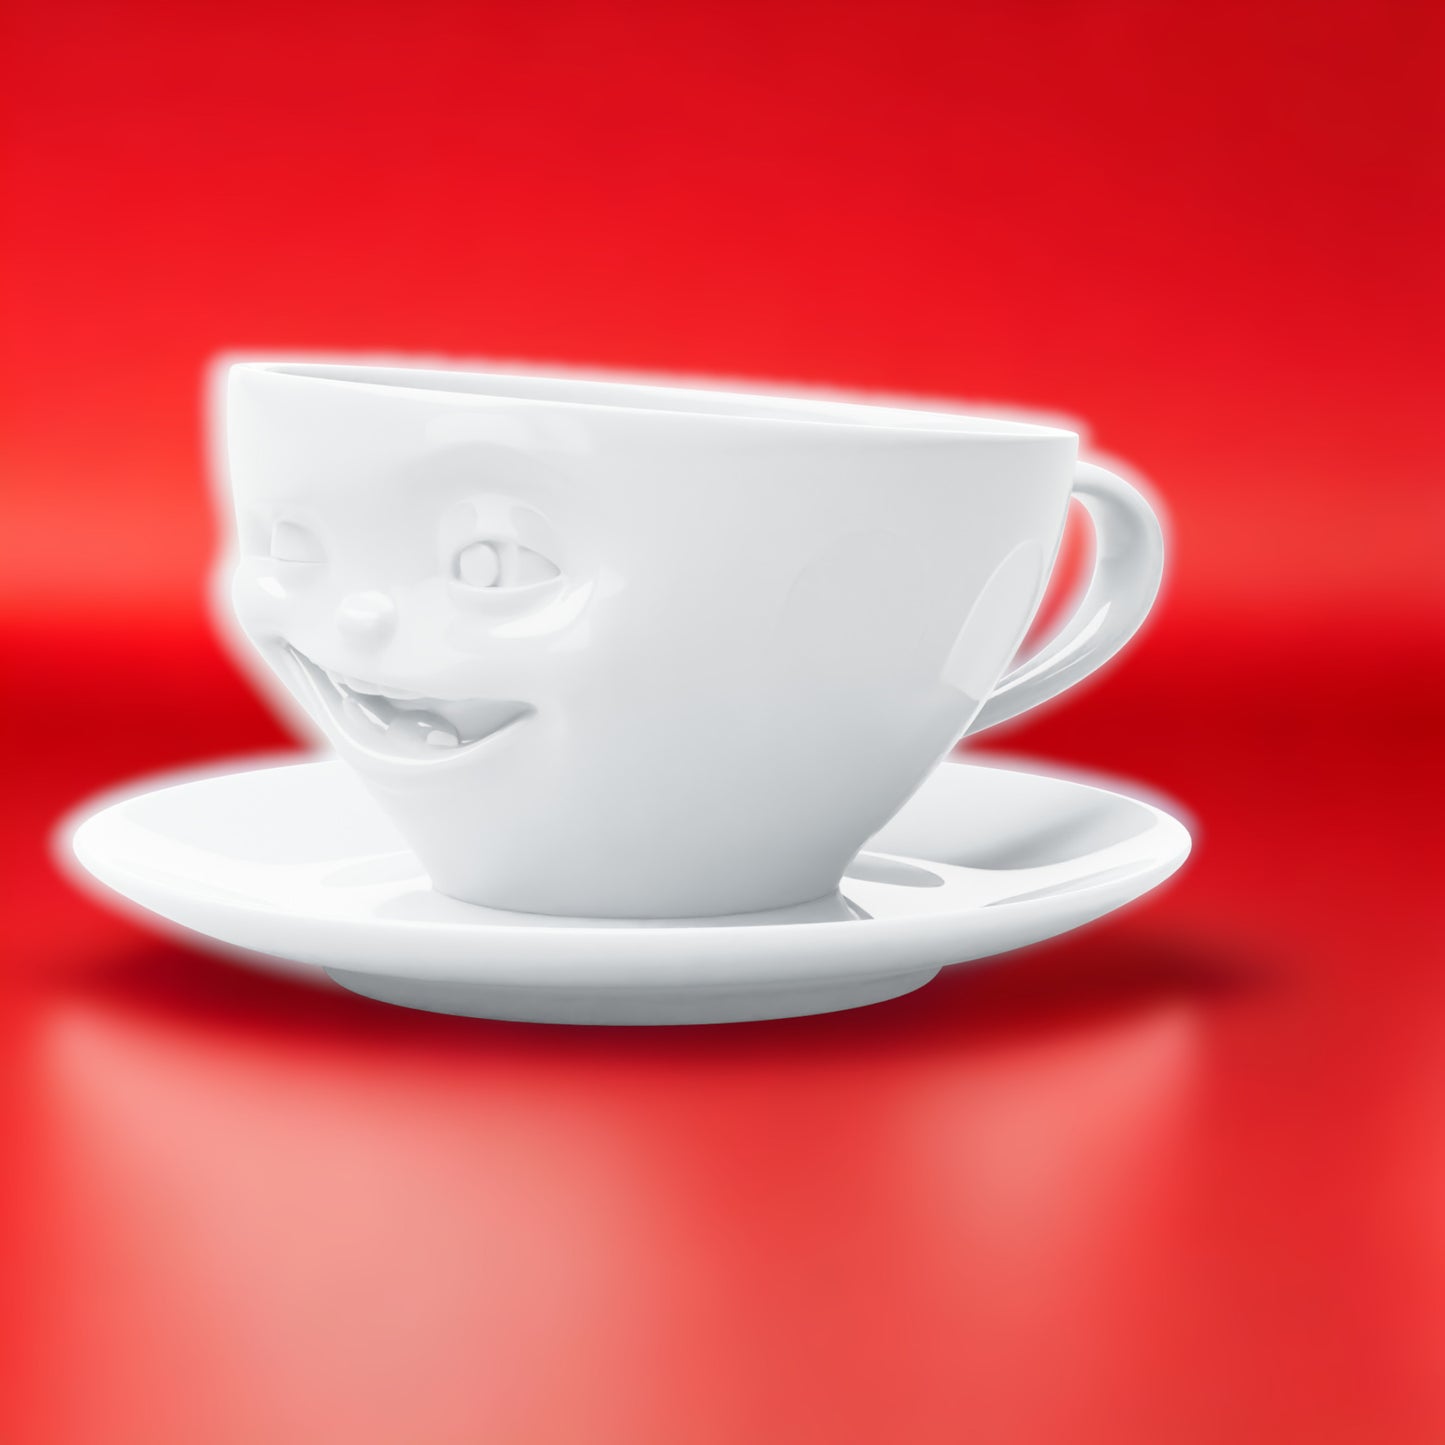 Lachende Tasse FIFTYEIGHT PRODUCTS | Kaffeetasse | ZWINKERND | ca. 200ml | weiß